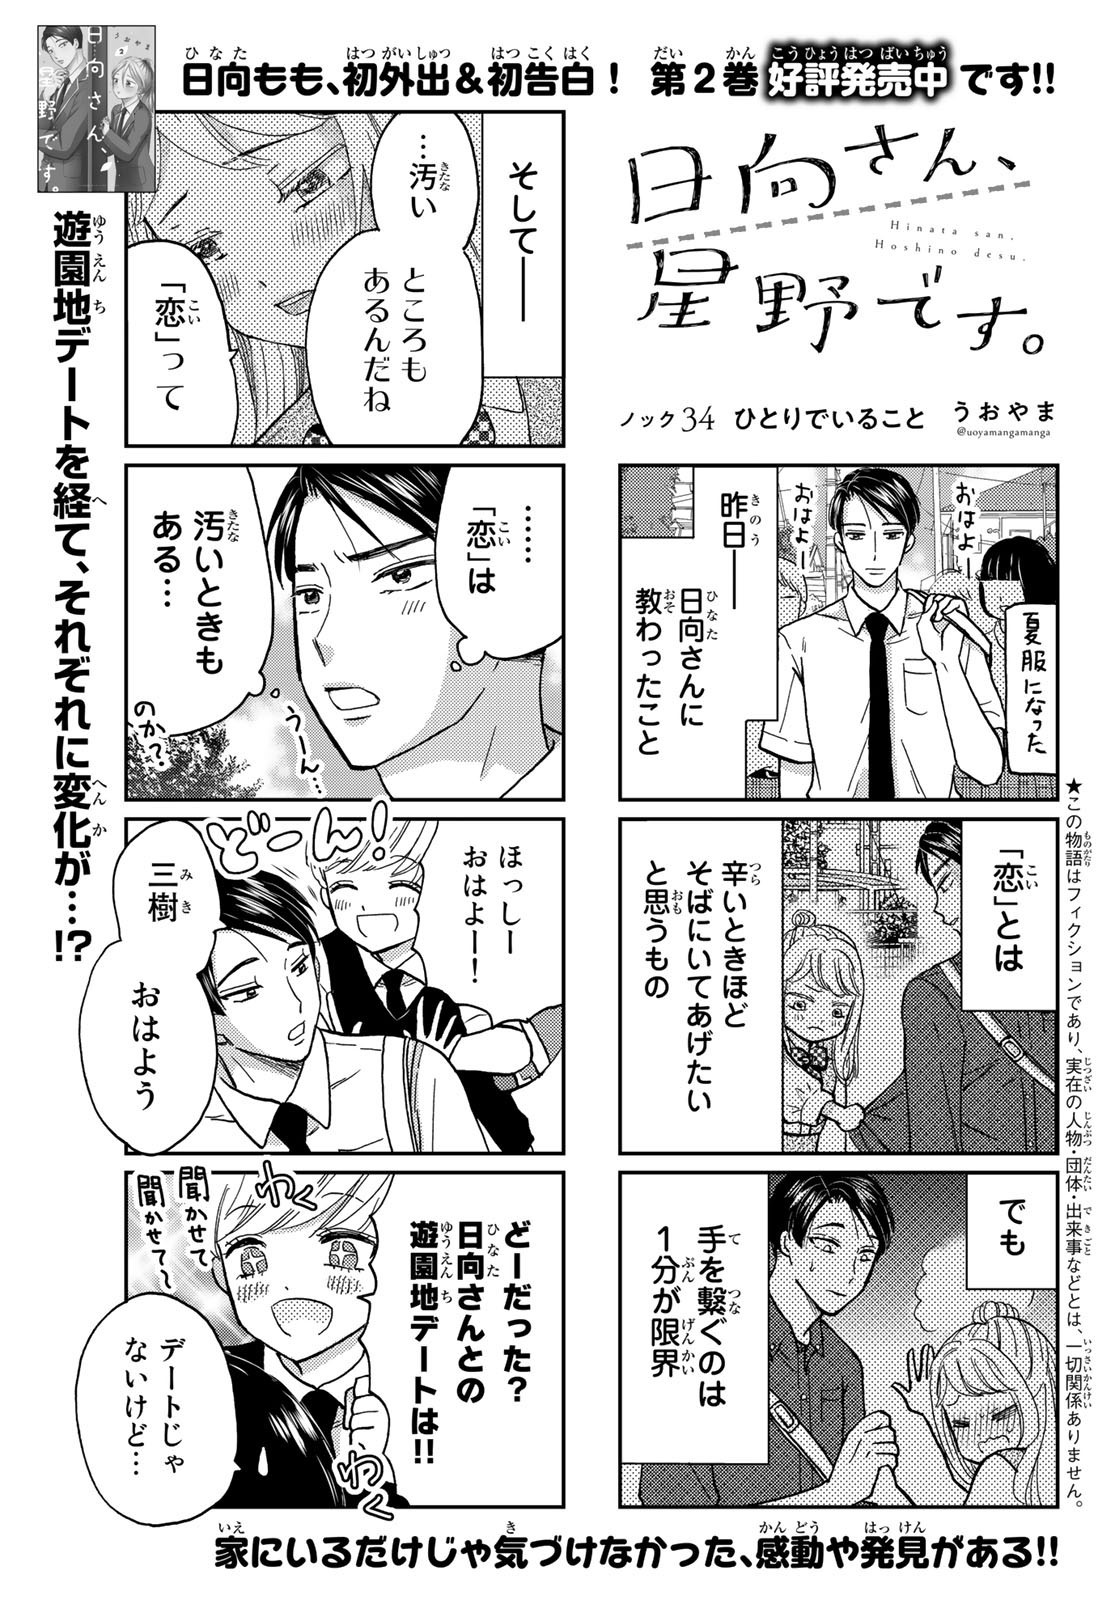 Hinata-san, Hoshino desu. - Chapter 034 - Page 1